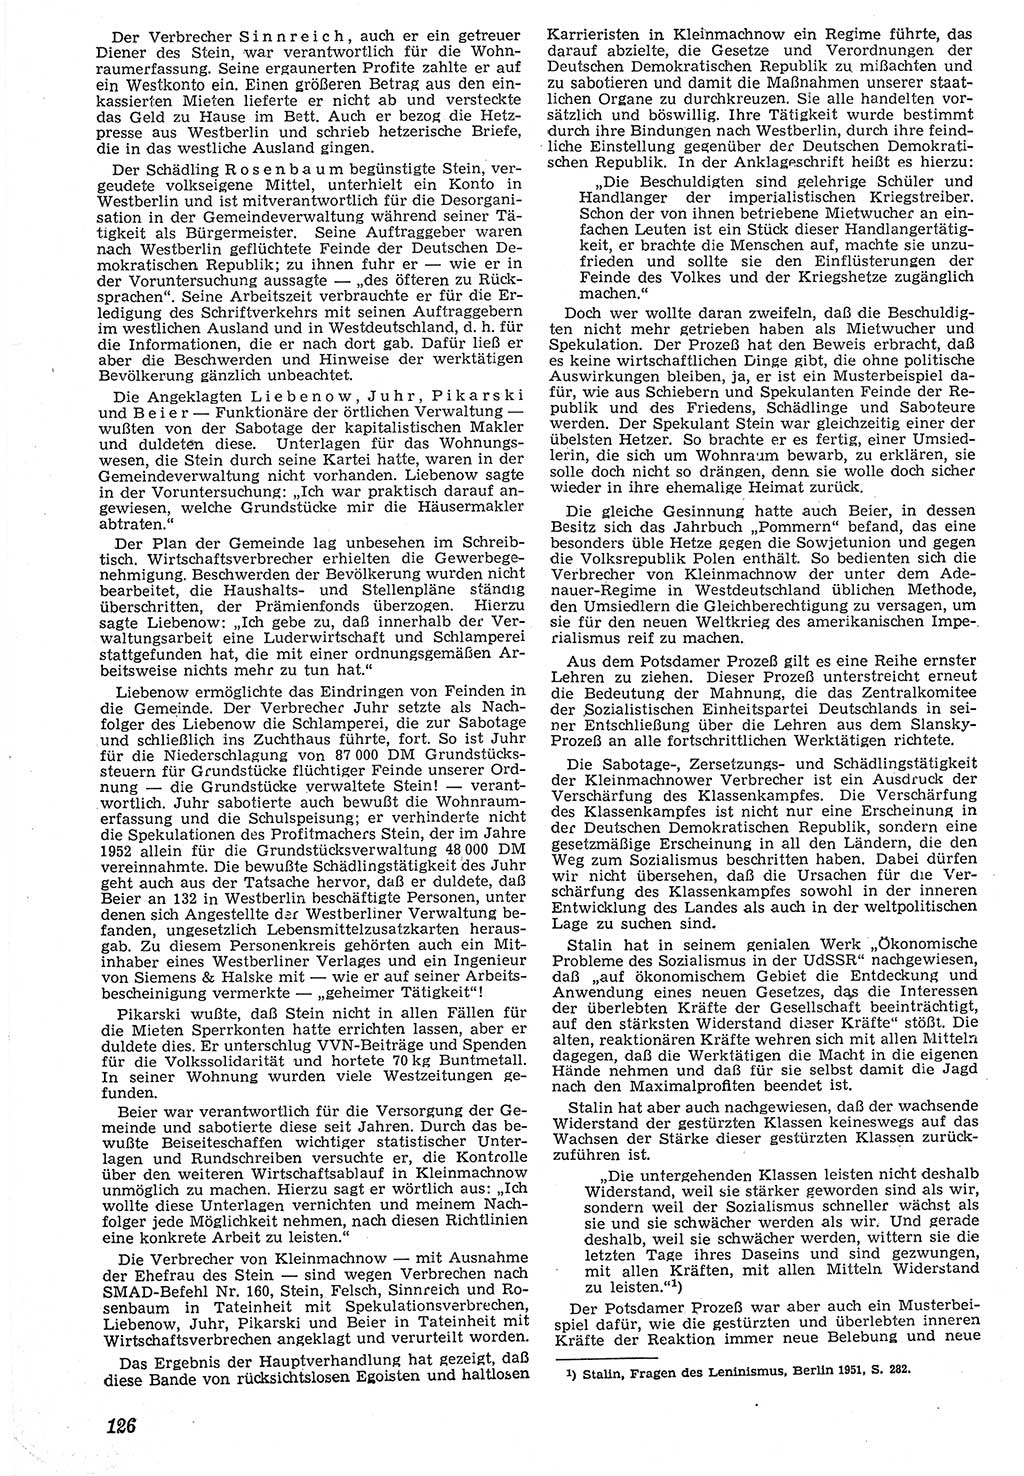 Neue Justiz (NJ), Zeitschrift für Recht und Rechtswissenschaft [Deutsche Demokratische Republik (DDR)], 7. Jahrgang 1953, Seite 126 (NJ DDR 1953, S. 126)